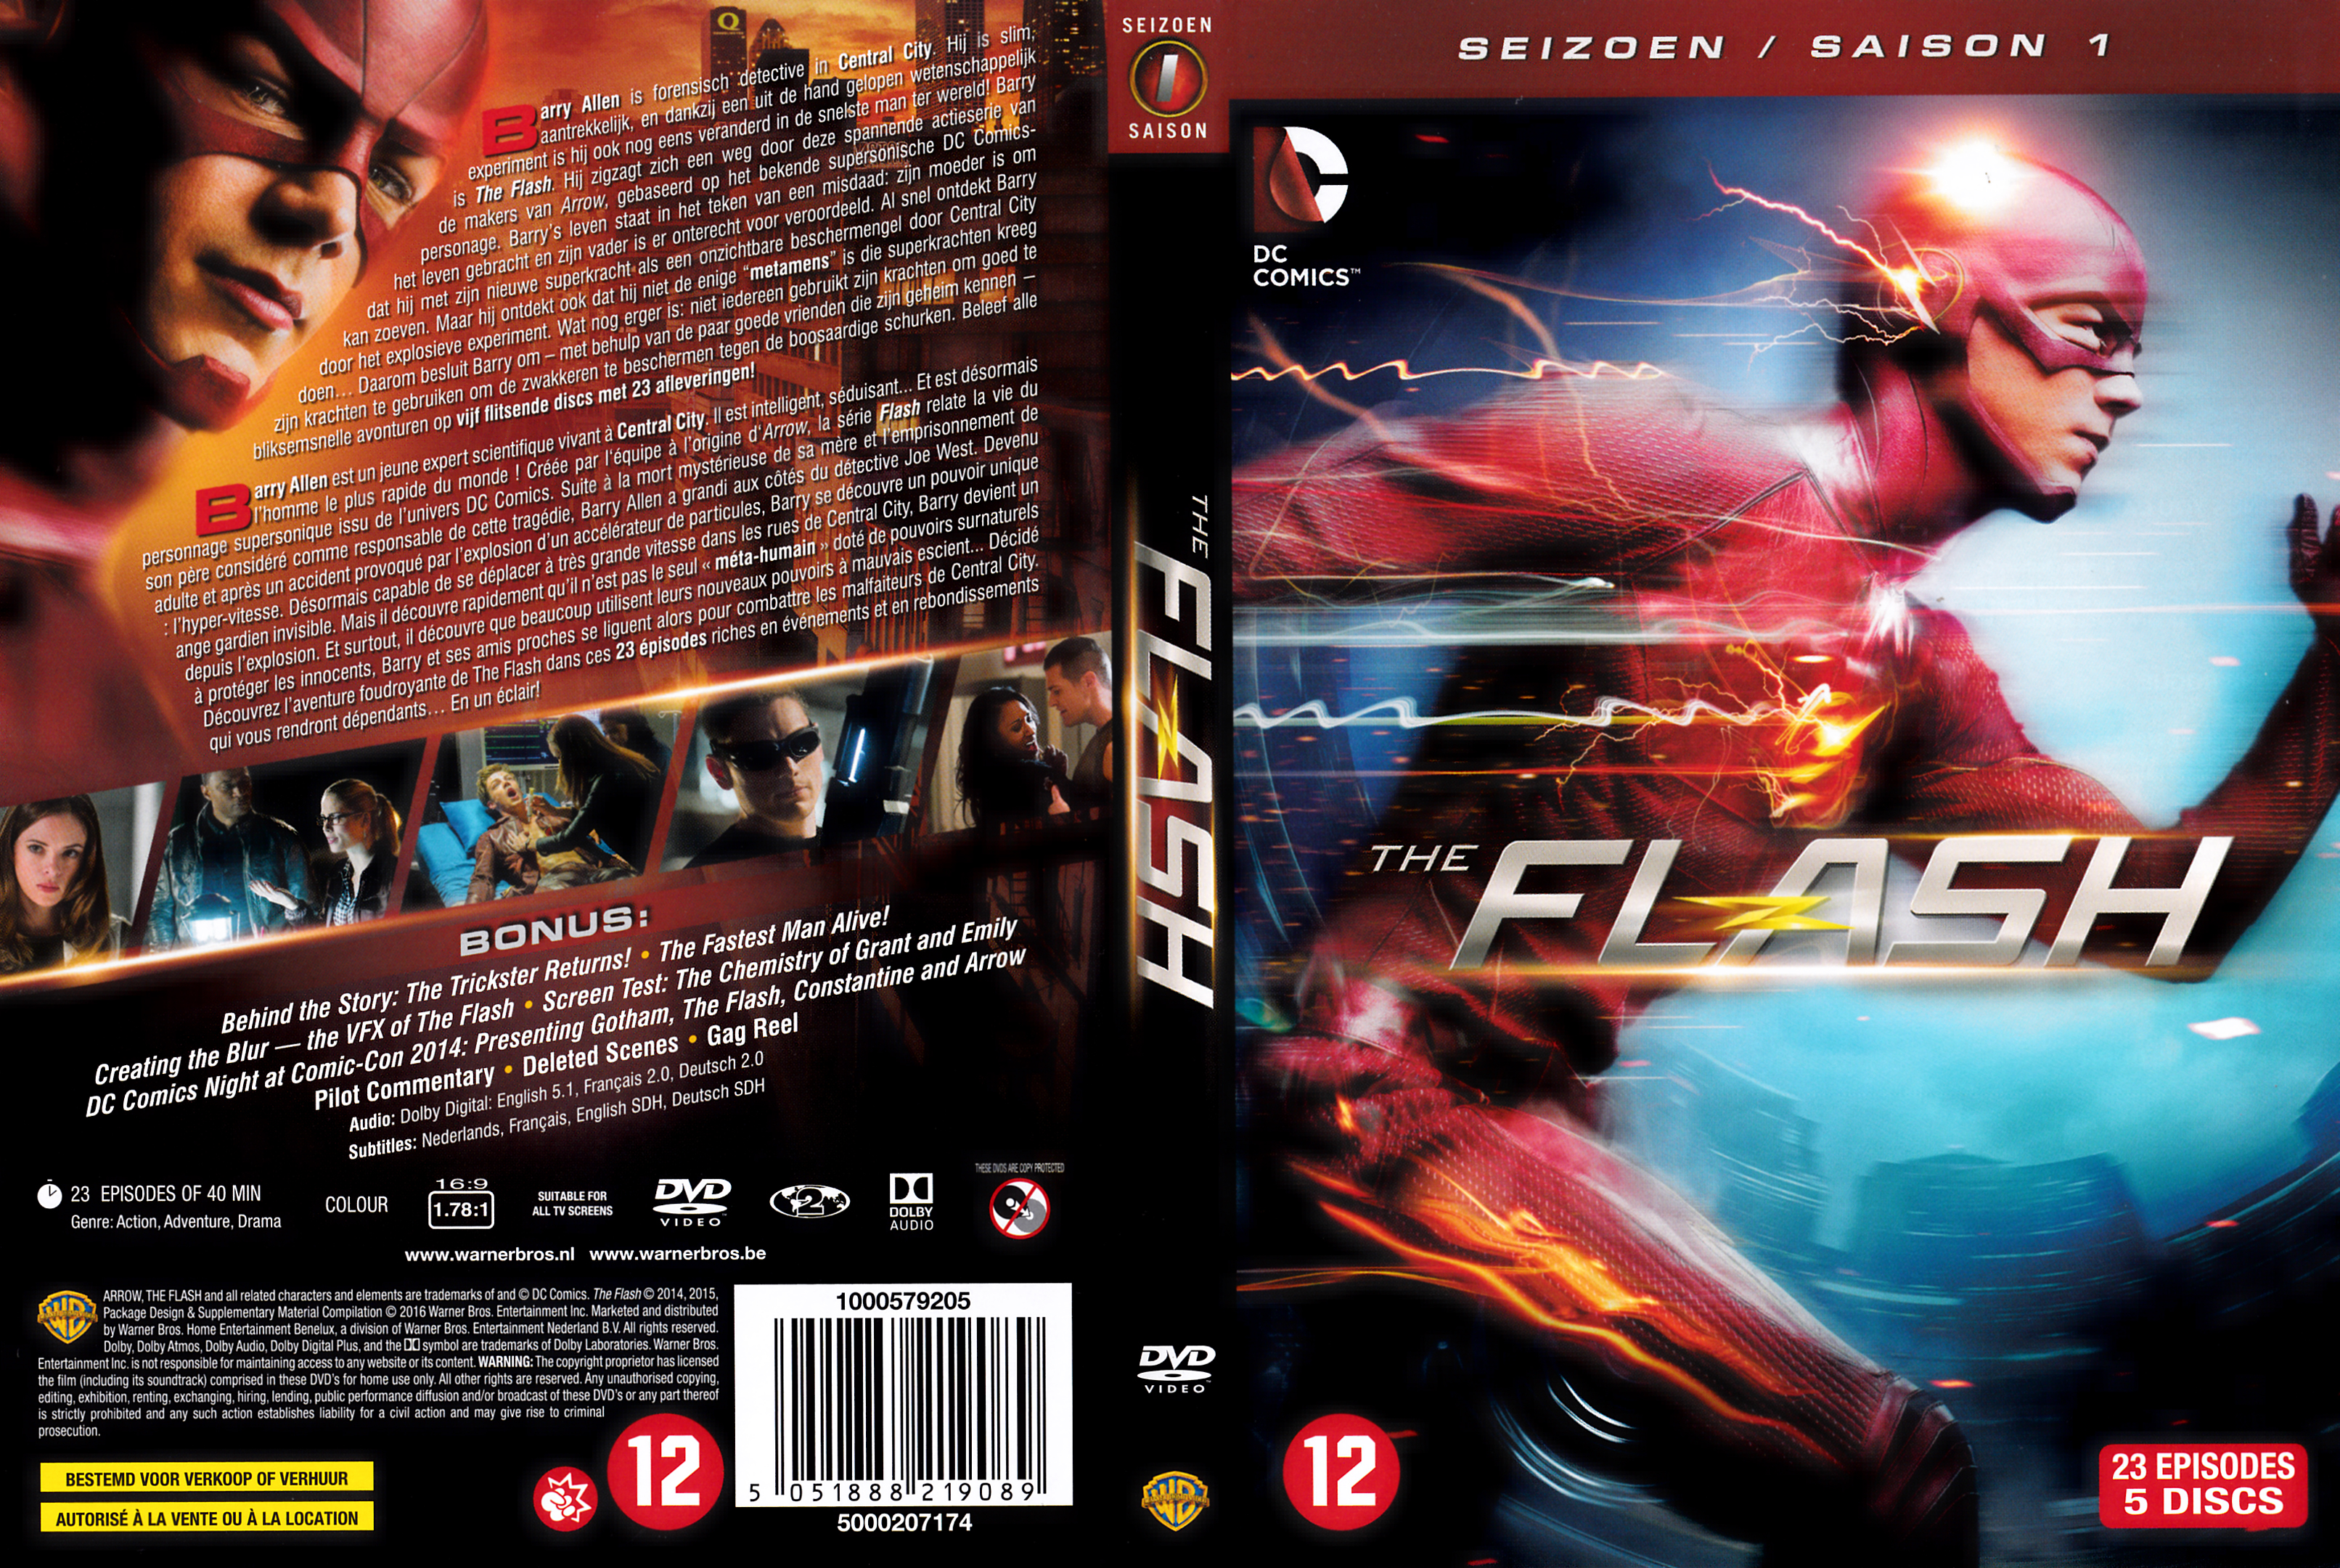 Jaquette DVD The flash saison 01 v2